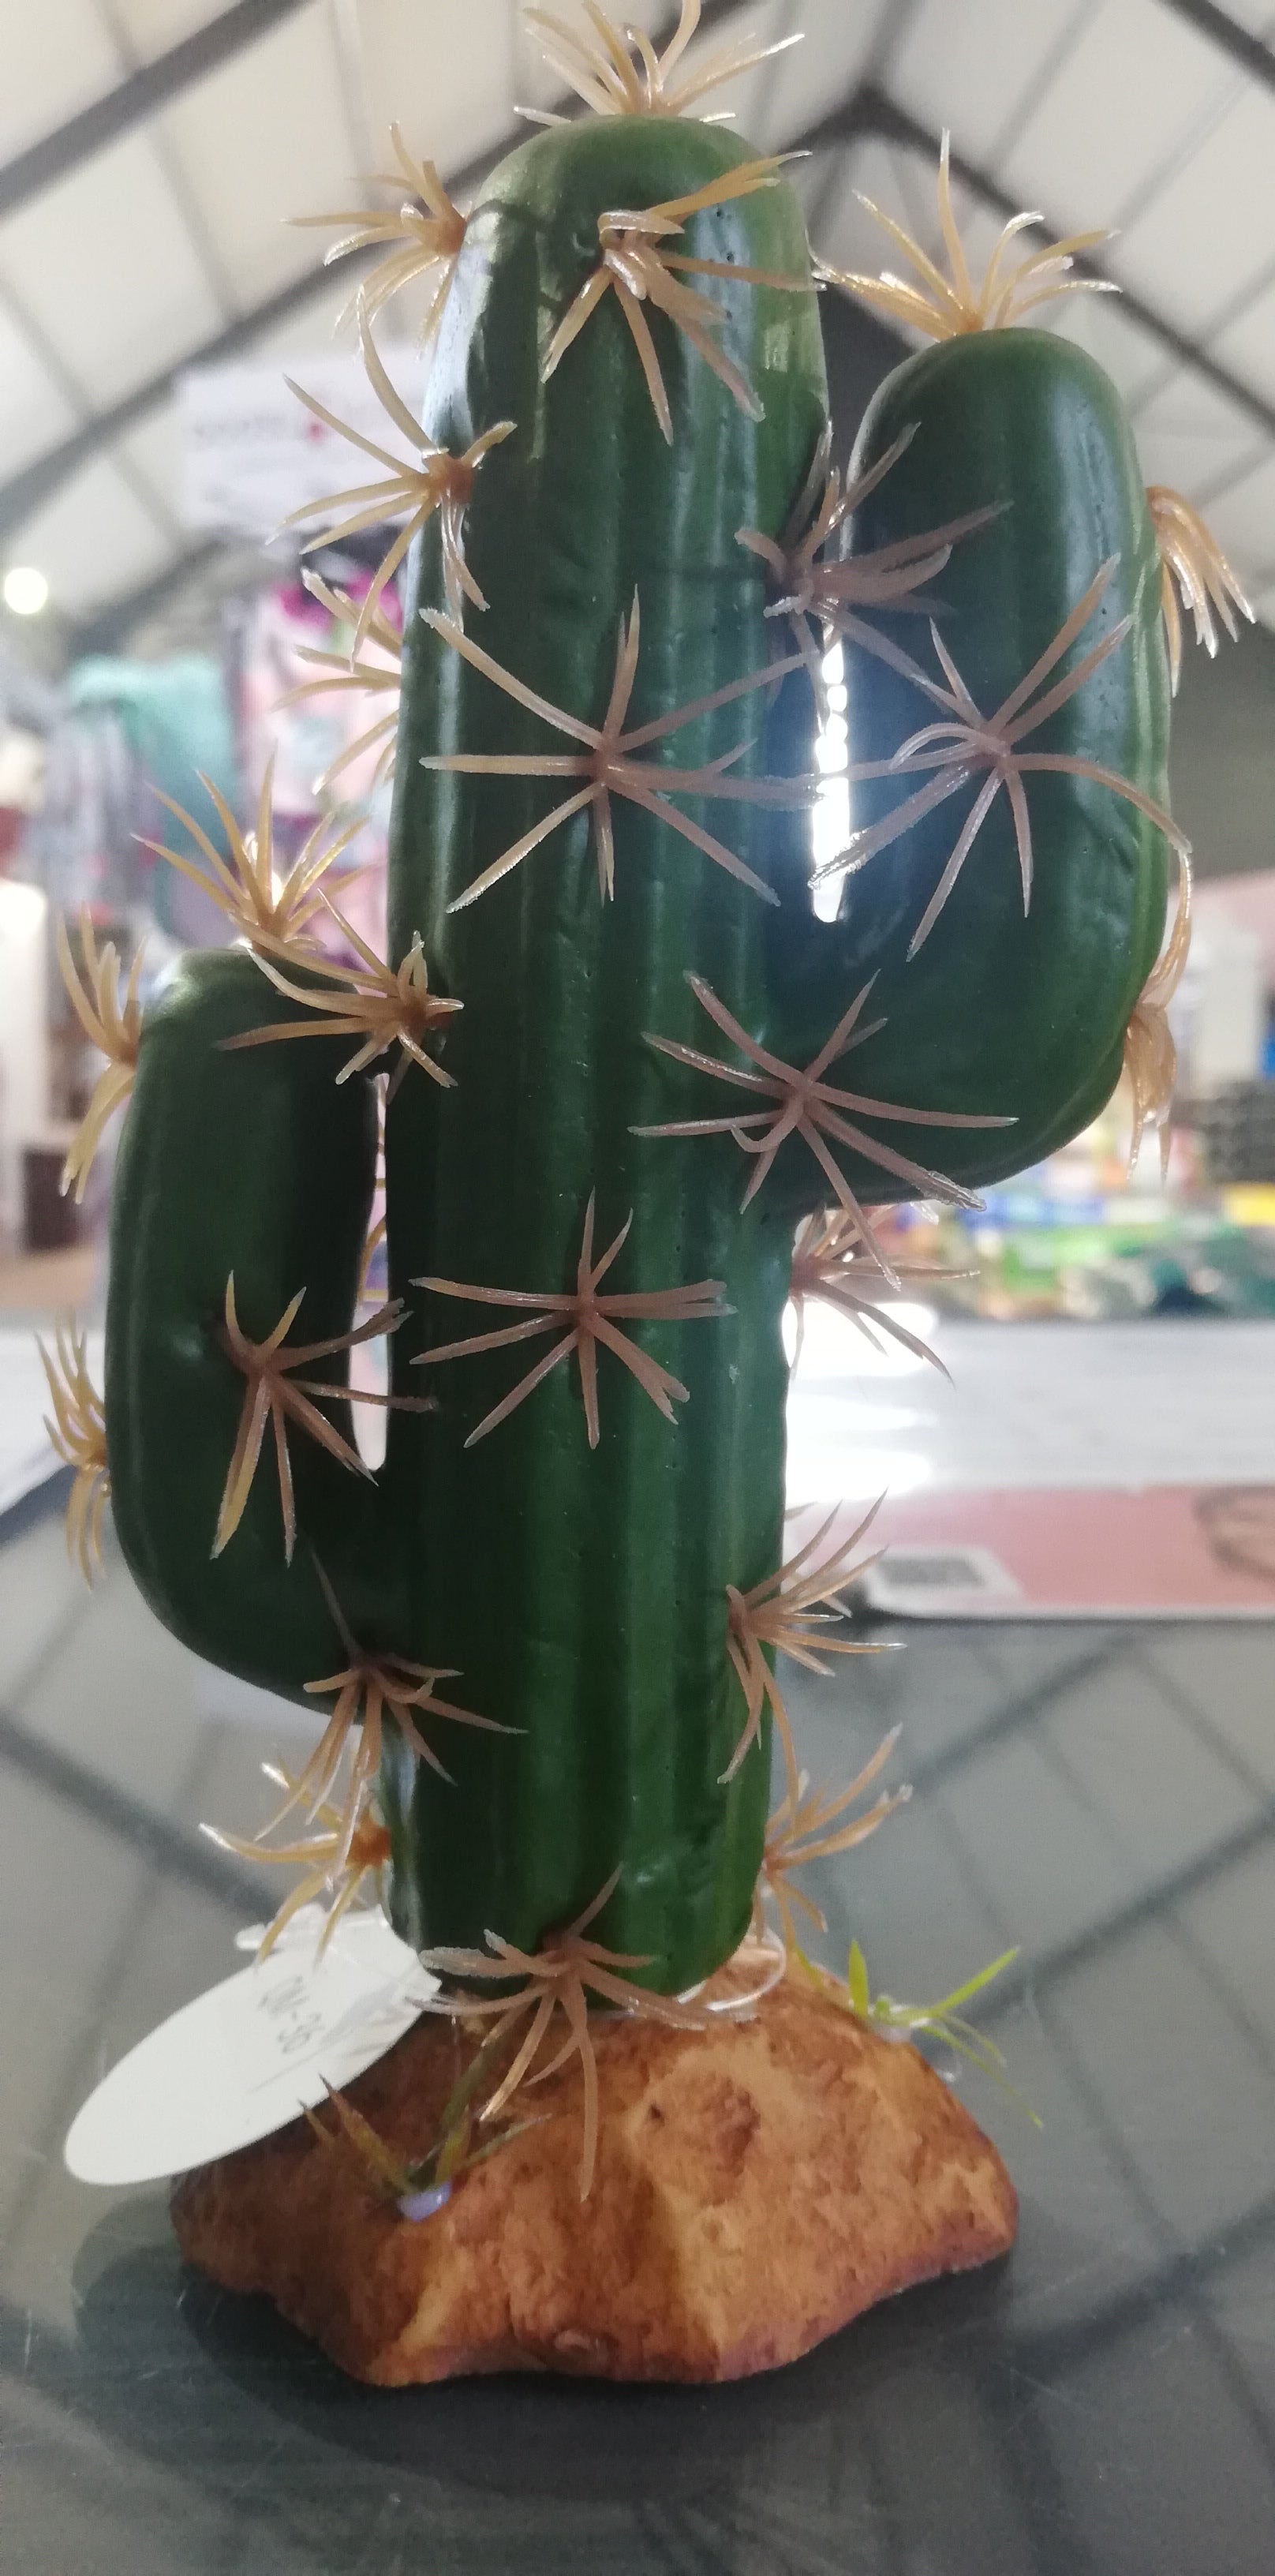 Cactus Plant QM-36